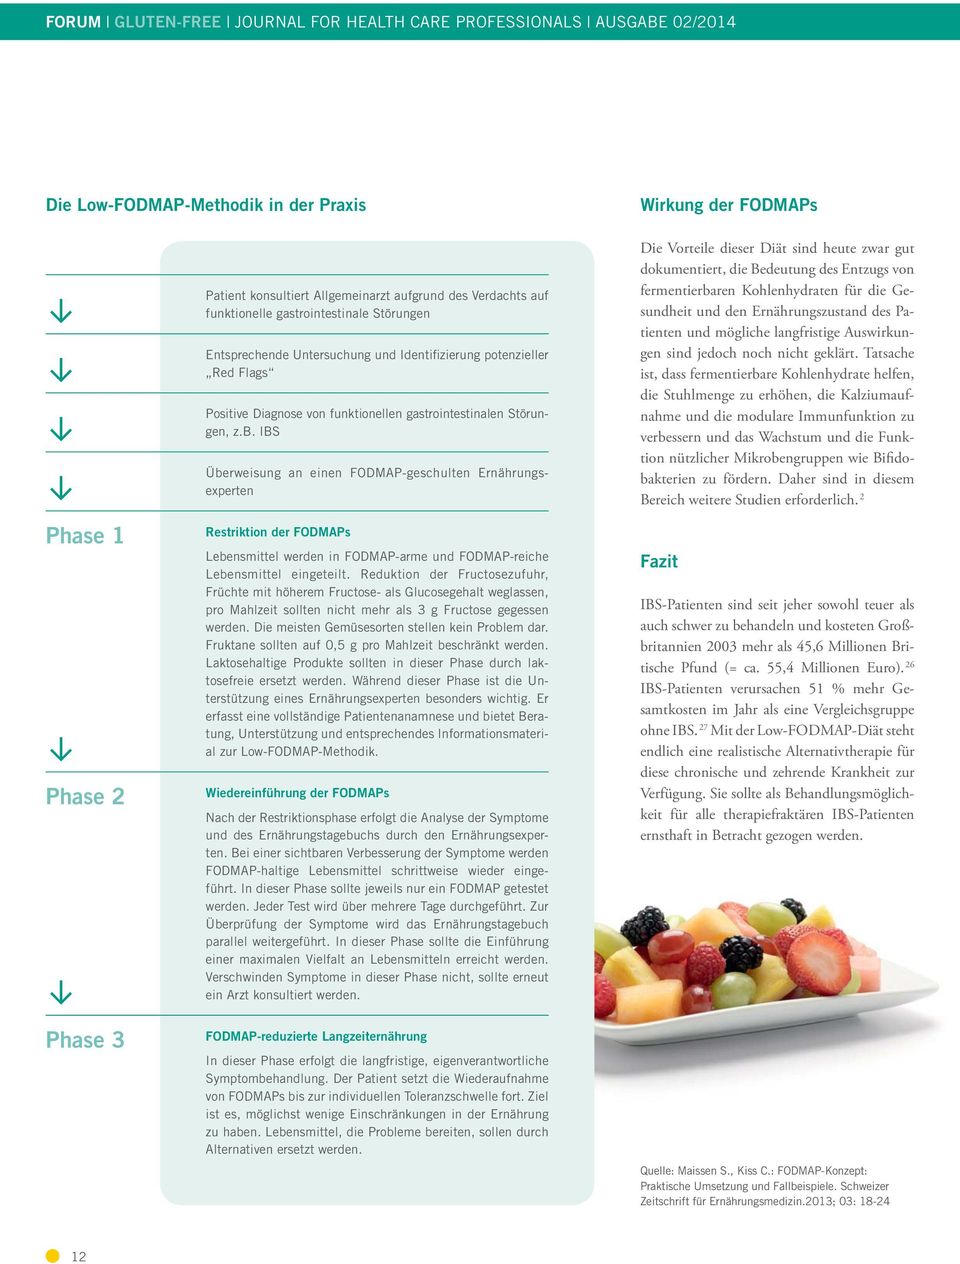 IBS Überweisung an einen FODMAP-geschulten Ernährungsexperten Wirkung der FODMAPs Die Vorteile dieser Diät sind heute zwar gut dokumentiert, die Bedeutung des Entzugs von fermentierbaren